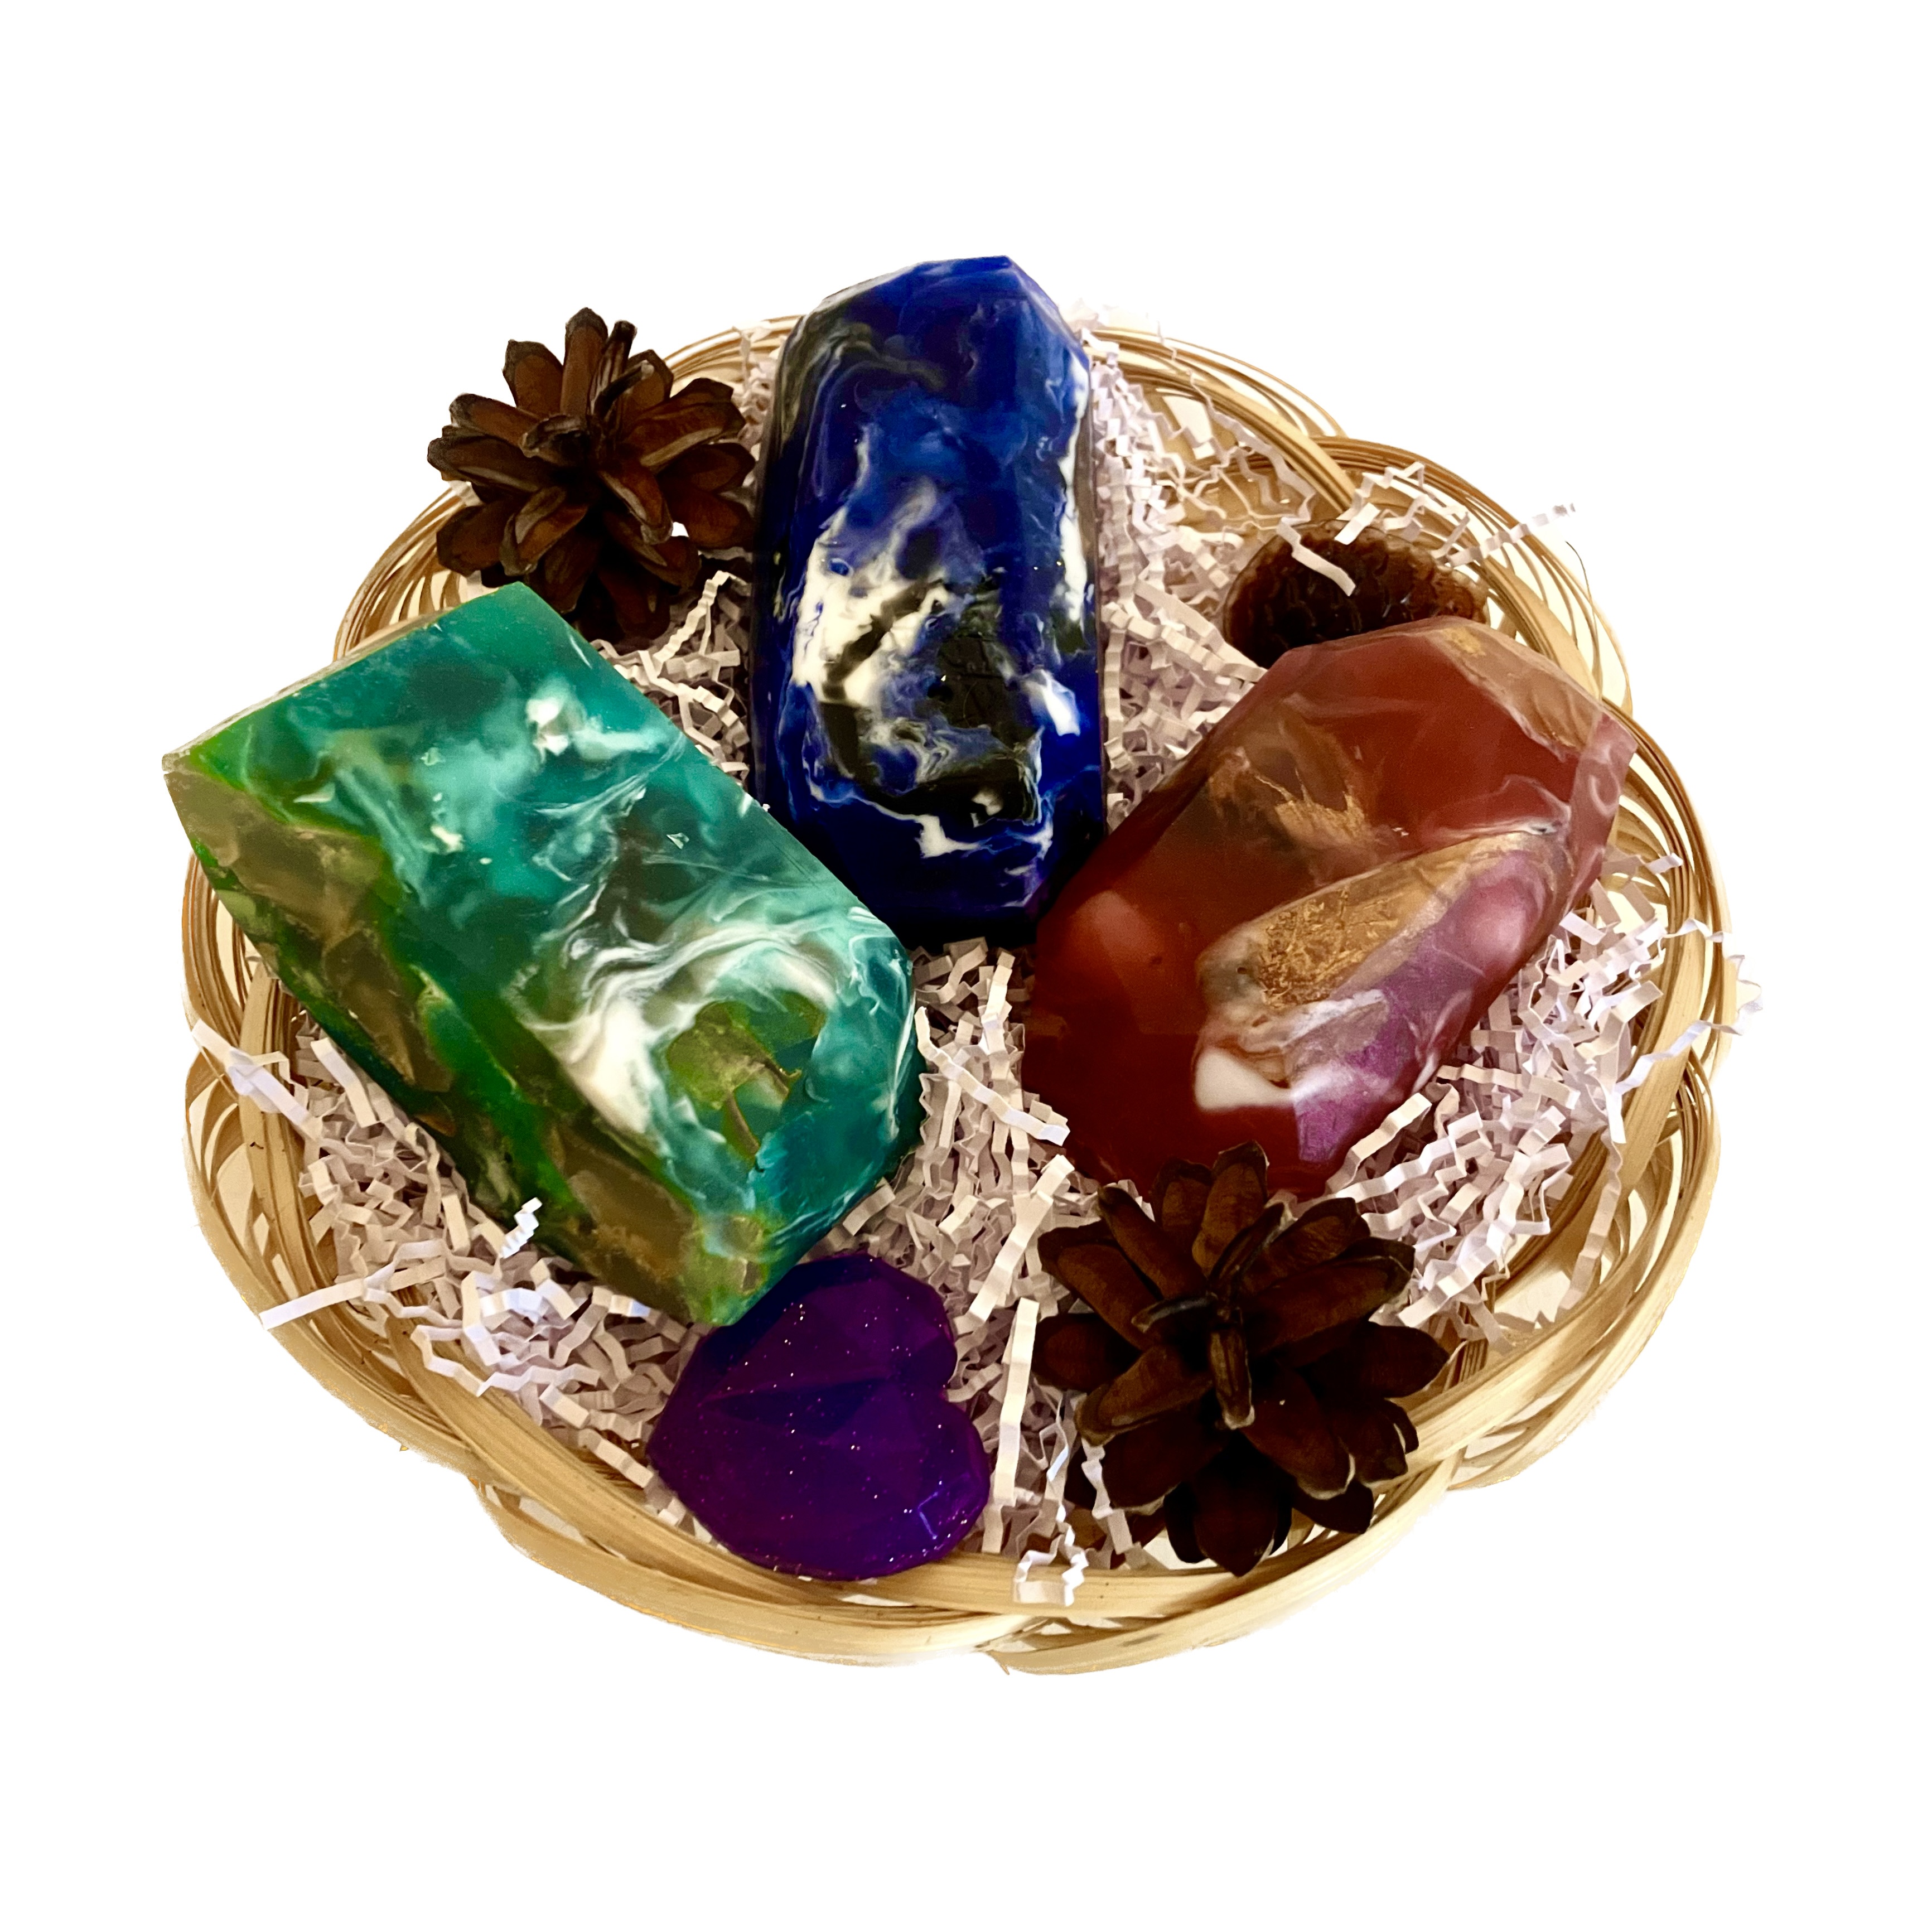 Набор мыла ручной работы Fresh&Natural Драгоценные камни 5 шт brocard gems collection lilac mist драгоценные камни сиреневый туман 50